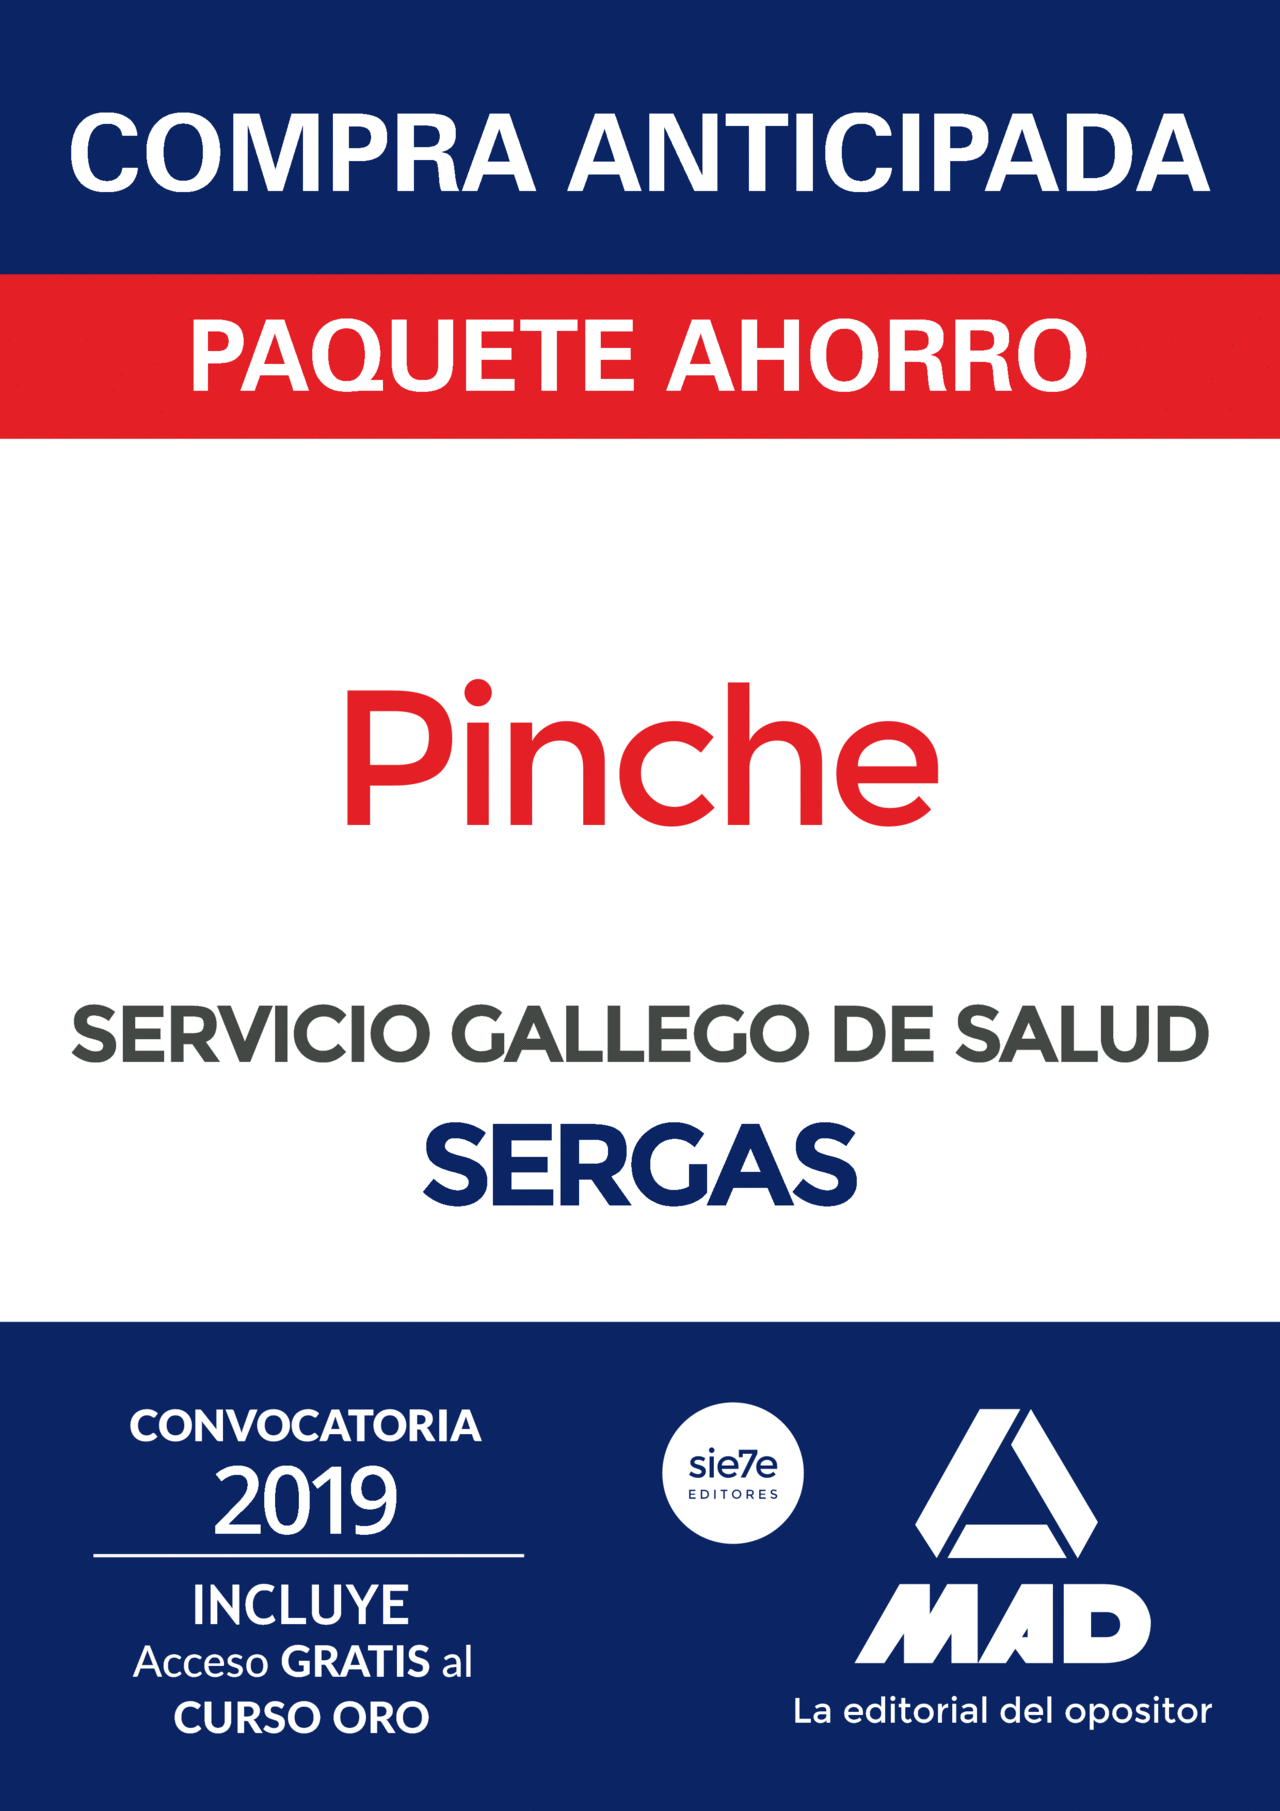 COMPRA ANTICIPADA PAQUETE AHORRO PINCHE DEL SERVICIO GALLEGO DE SALUD. AHORRA 55